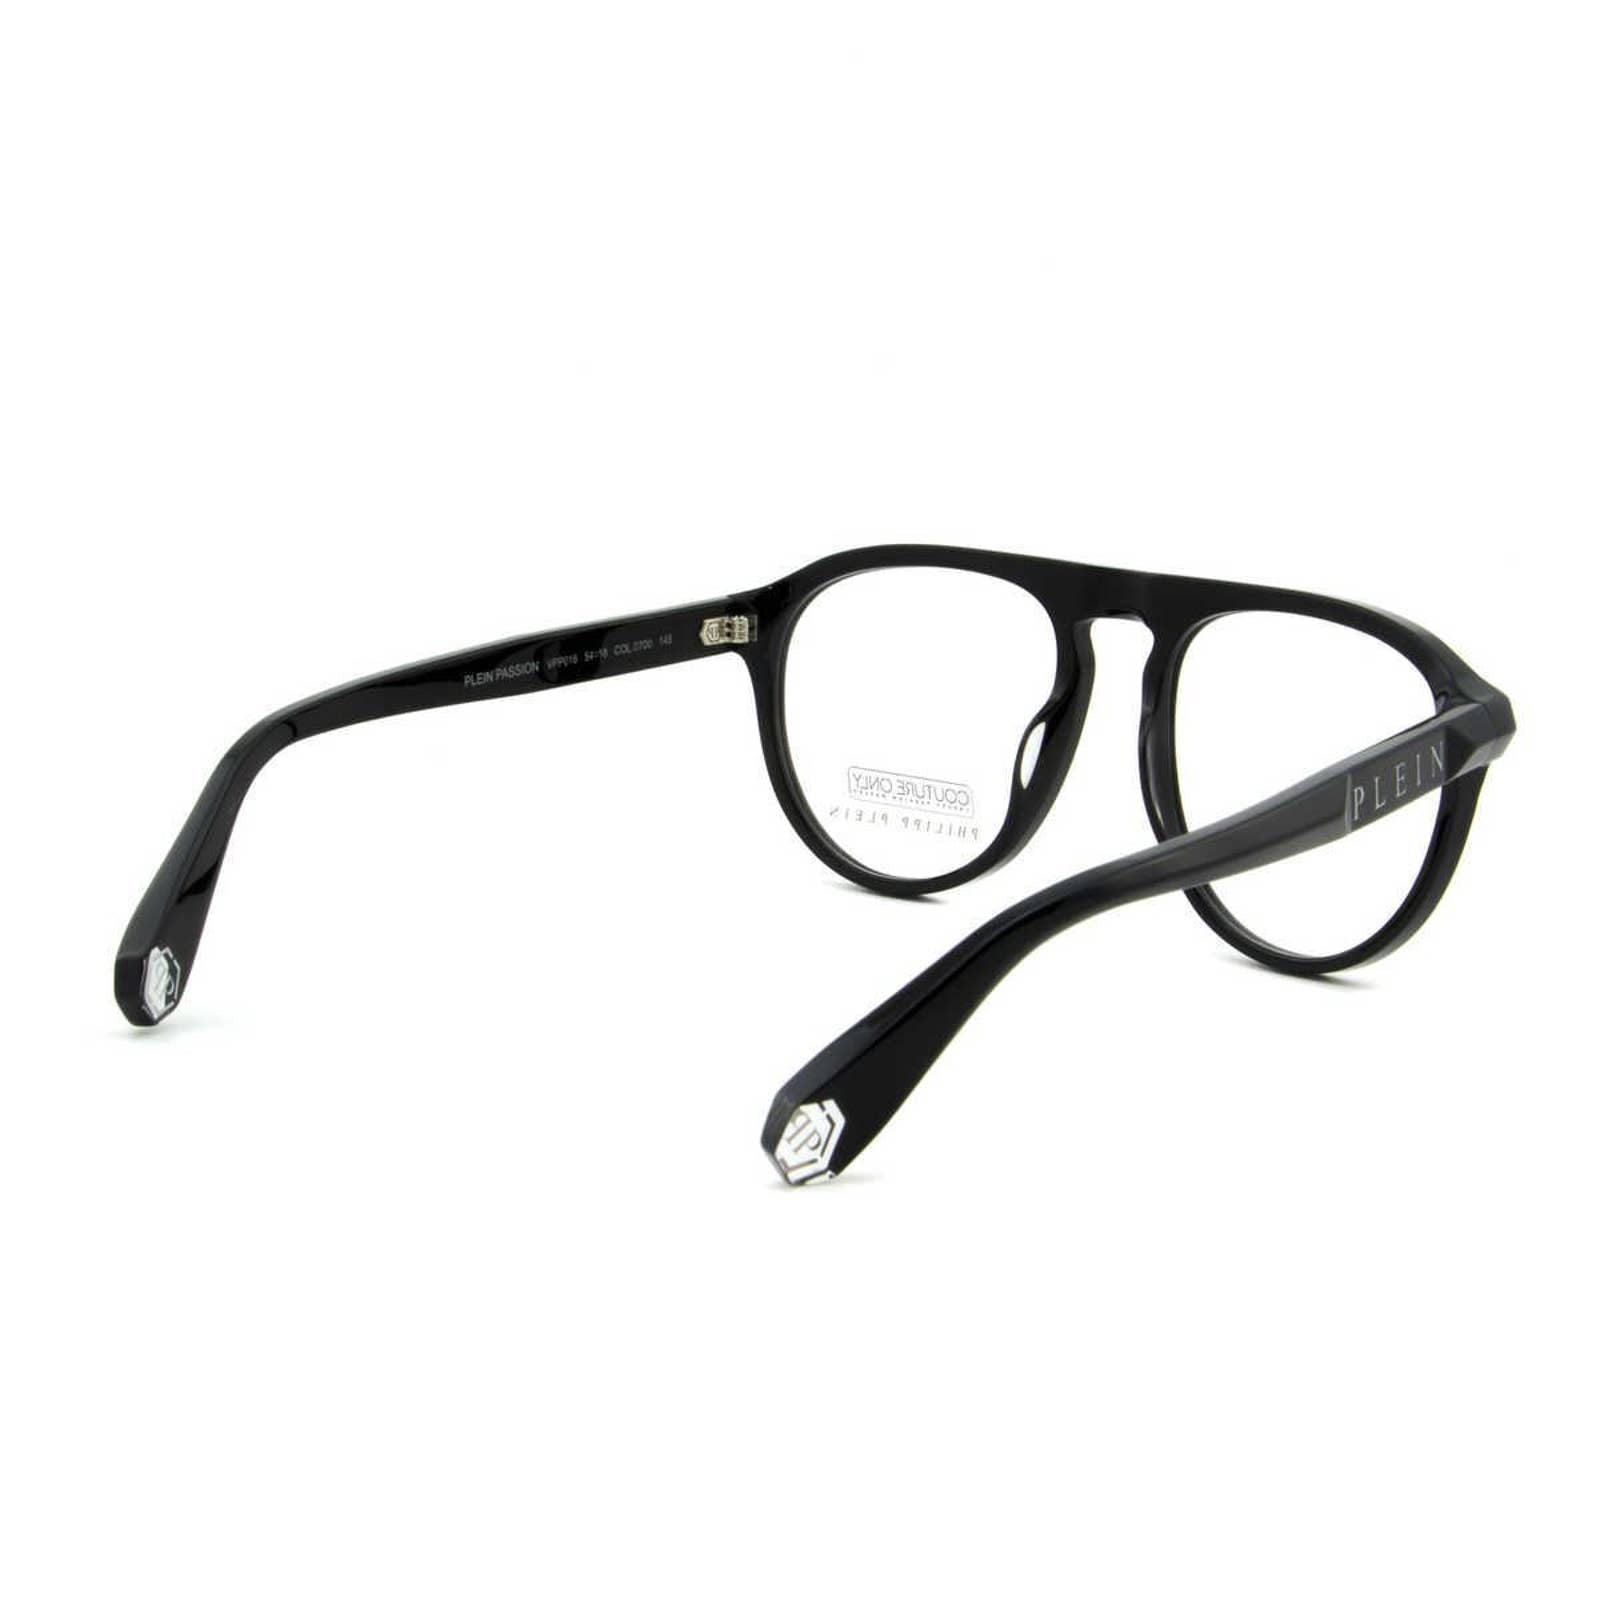 Men Optical Glasses Oval Aviator Black Eyeglasses VPP016M-0700